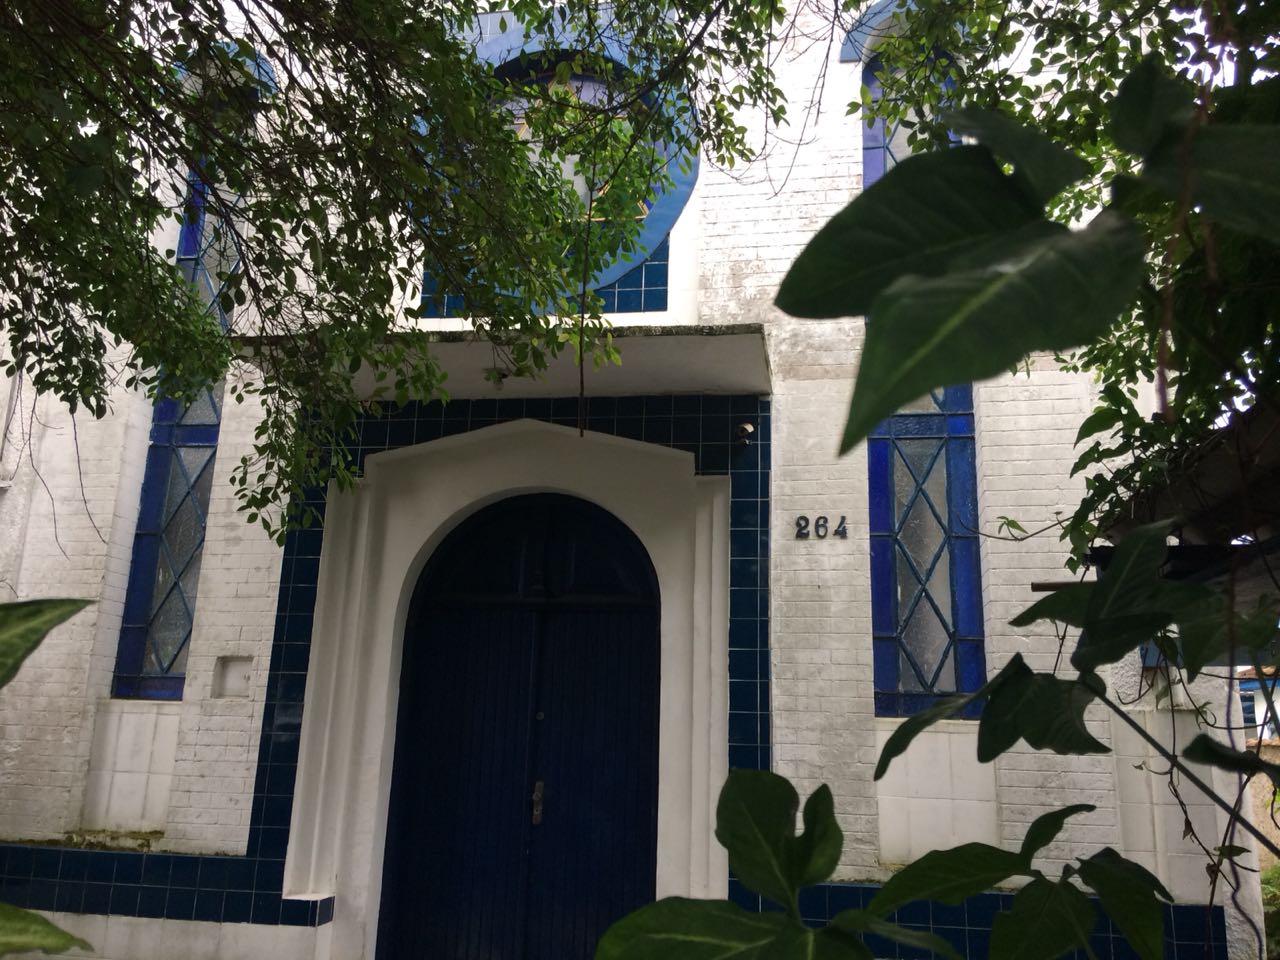 AS SINAGOGAS EM SÃO PAULO - ARTE E ARQUITETURA JUDAICA: A Sinagoga